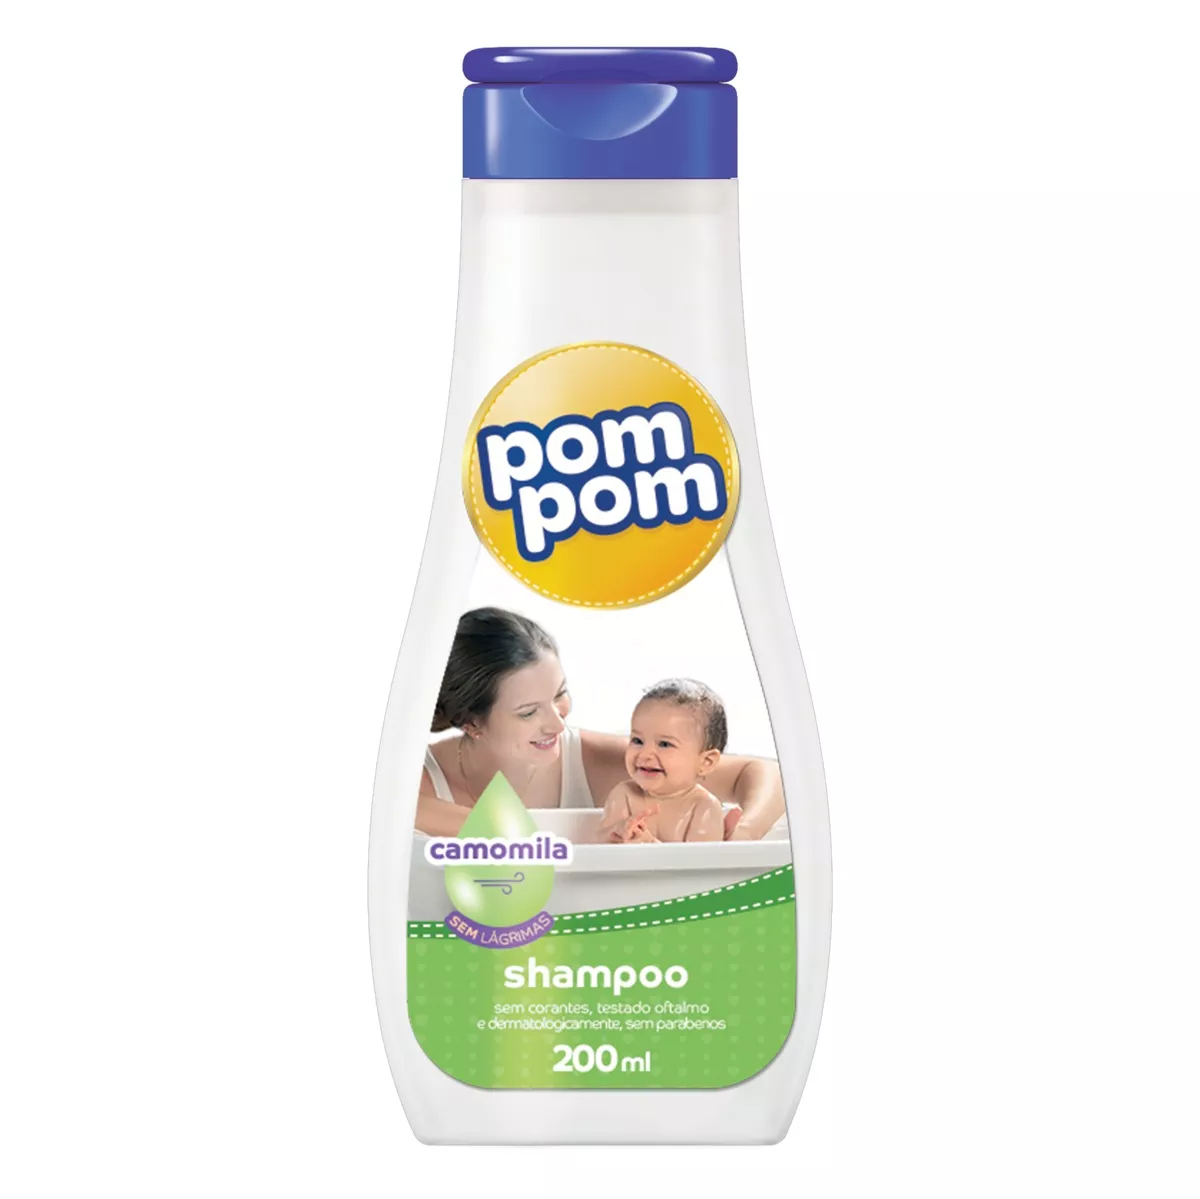 Shampoo Pom Pom De Camomila En Frasco De 200ml